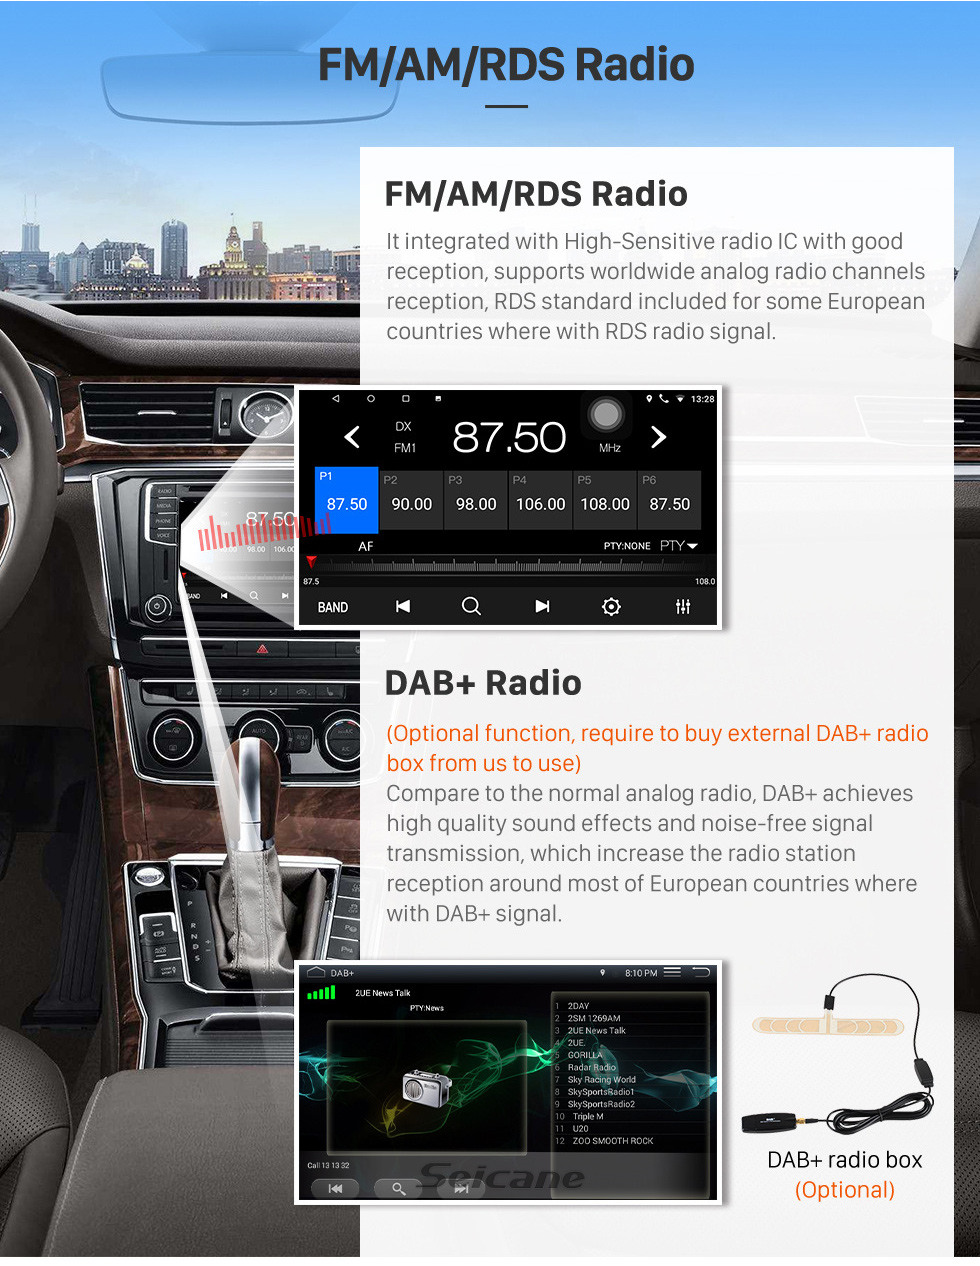 Seicane OEM 10,1 polegadas Android 10.0 para 2015 JDMC T5 Rádio Bluetooth WIFI HD Touchscreen Sistema de Navegação GPS suporte Carplay Retrovisor câmera